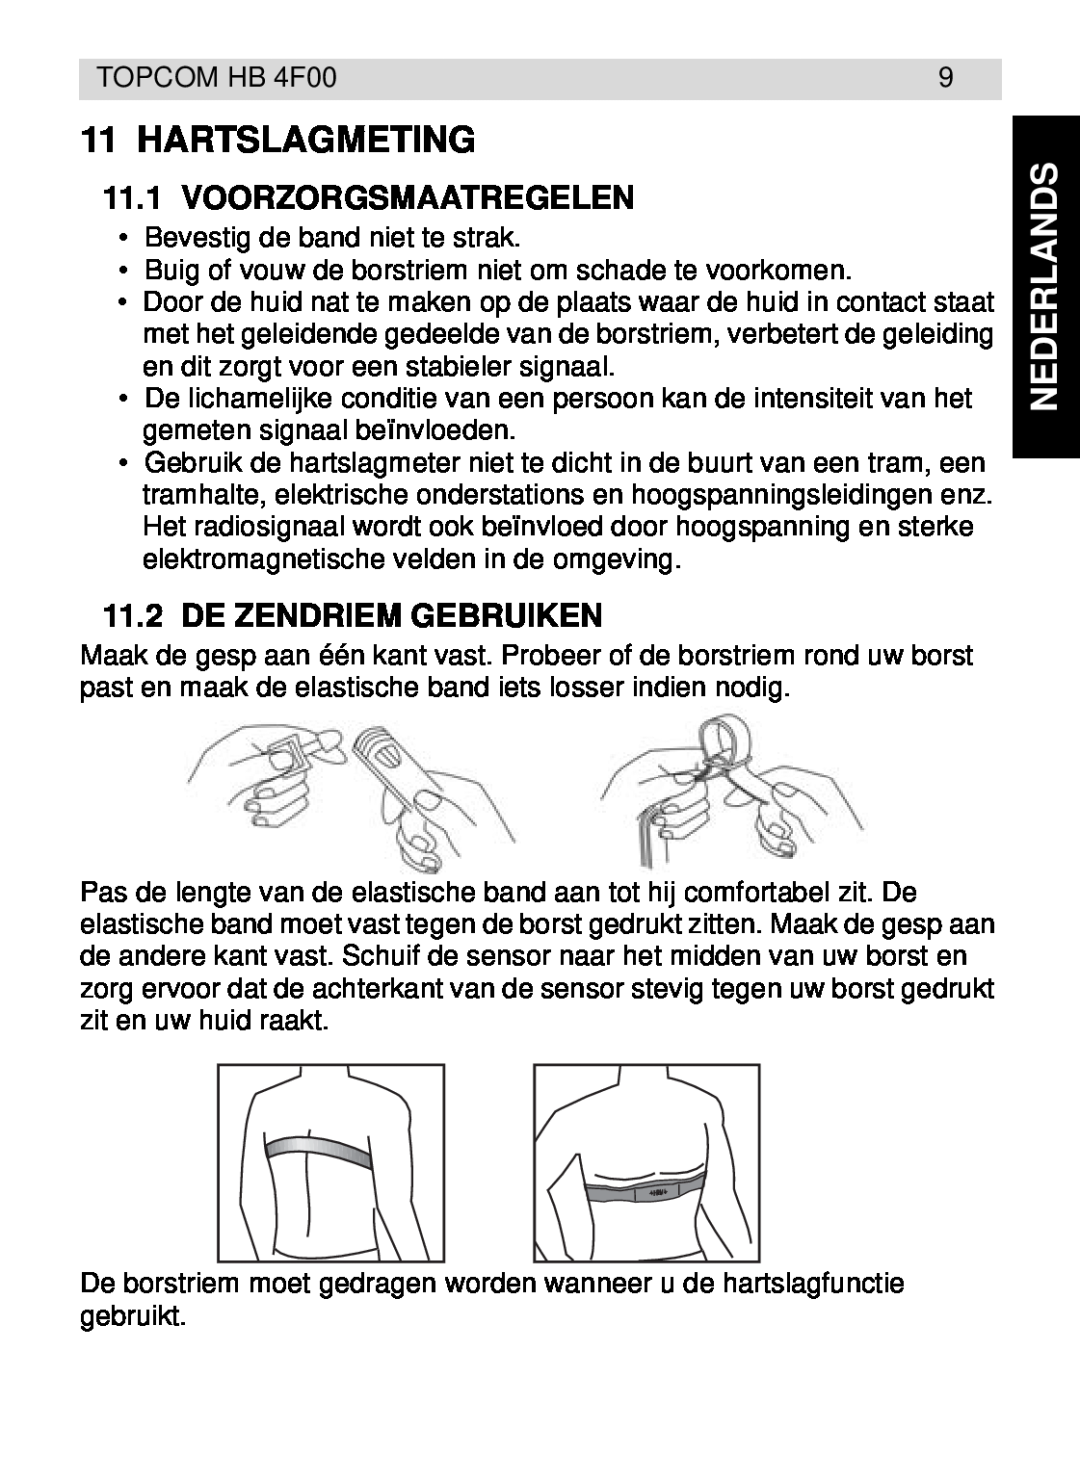 Topcom HB 4F00 manual Hartslagmeting, Voorzorgsmaatregelen, De Zendriem Gebruiken, Nederlands 